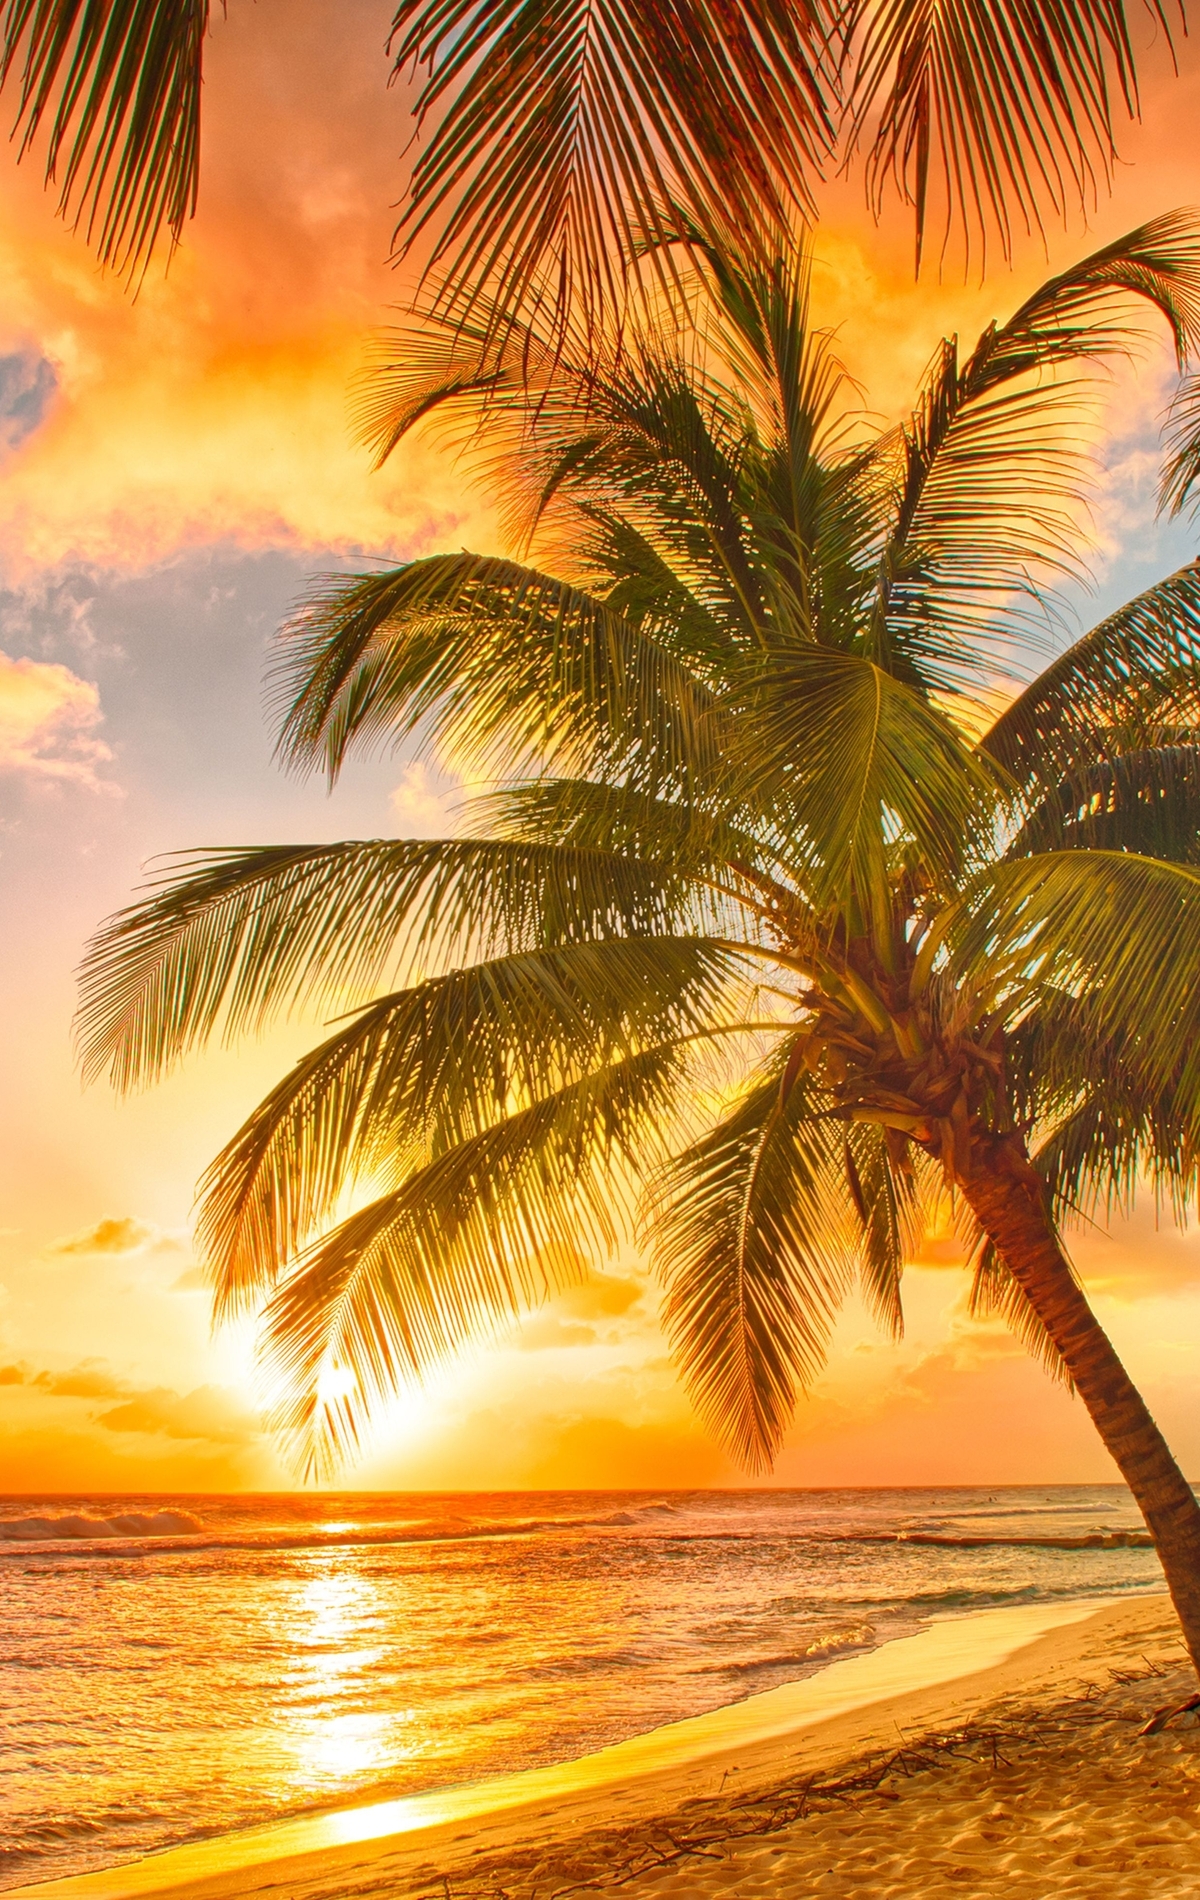 Картинка: Тропики, пальмы, небо, море, песок, закат